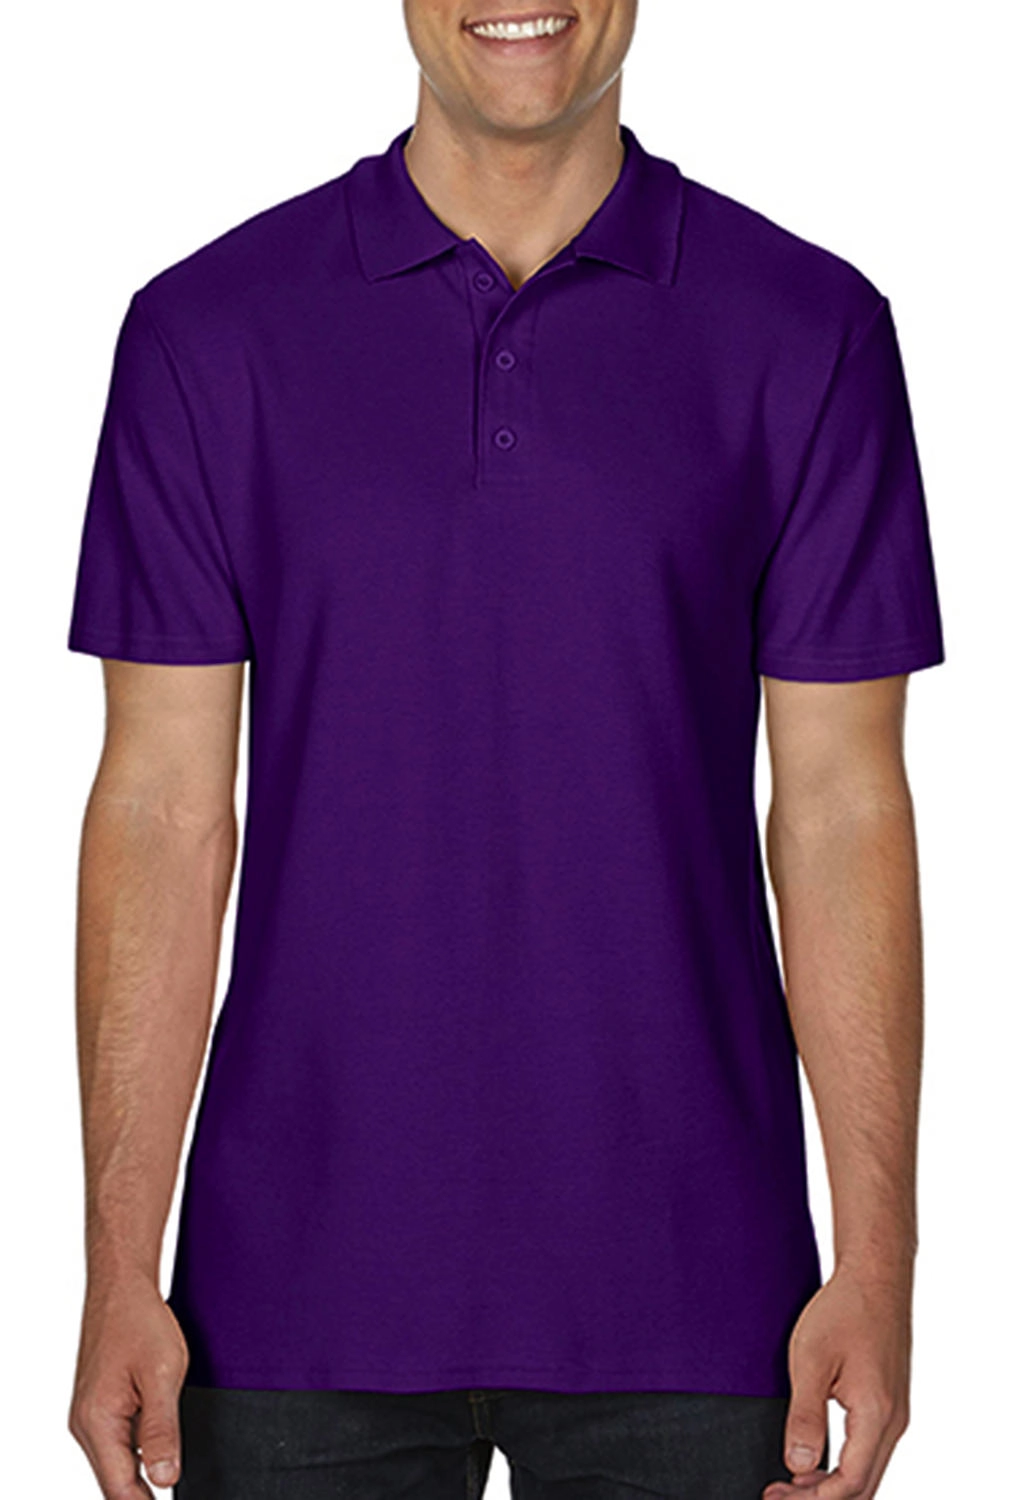 Softstyle® Adult Double Pique Polo zum Besticken und Bedrucken in der Farbe Purple mit Ihren Logo, Schriftzug oder Motiv.